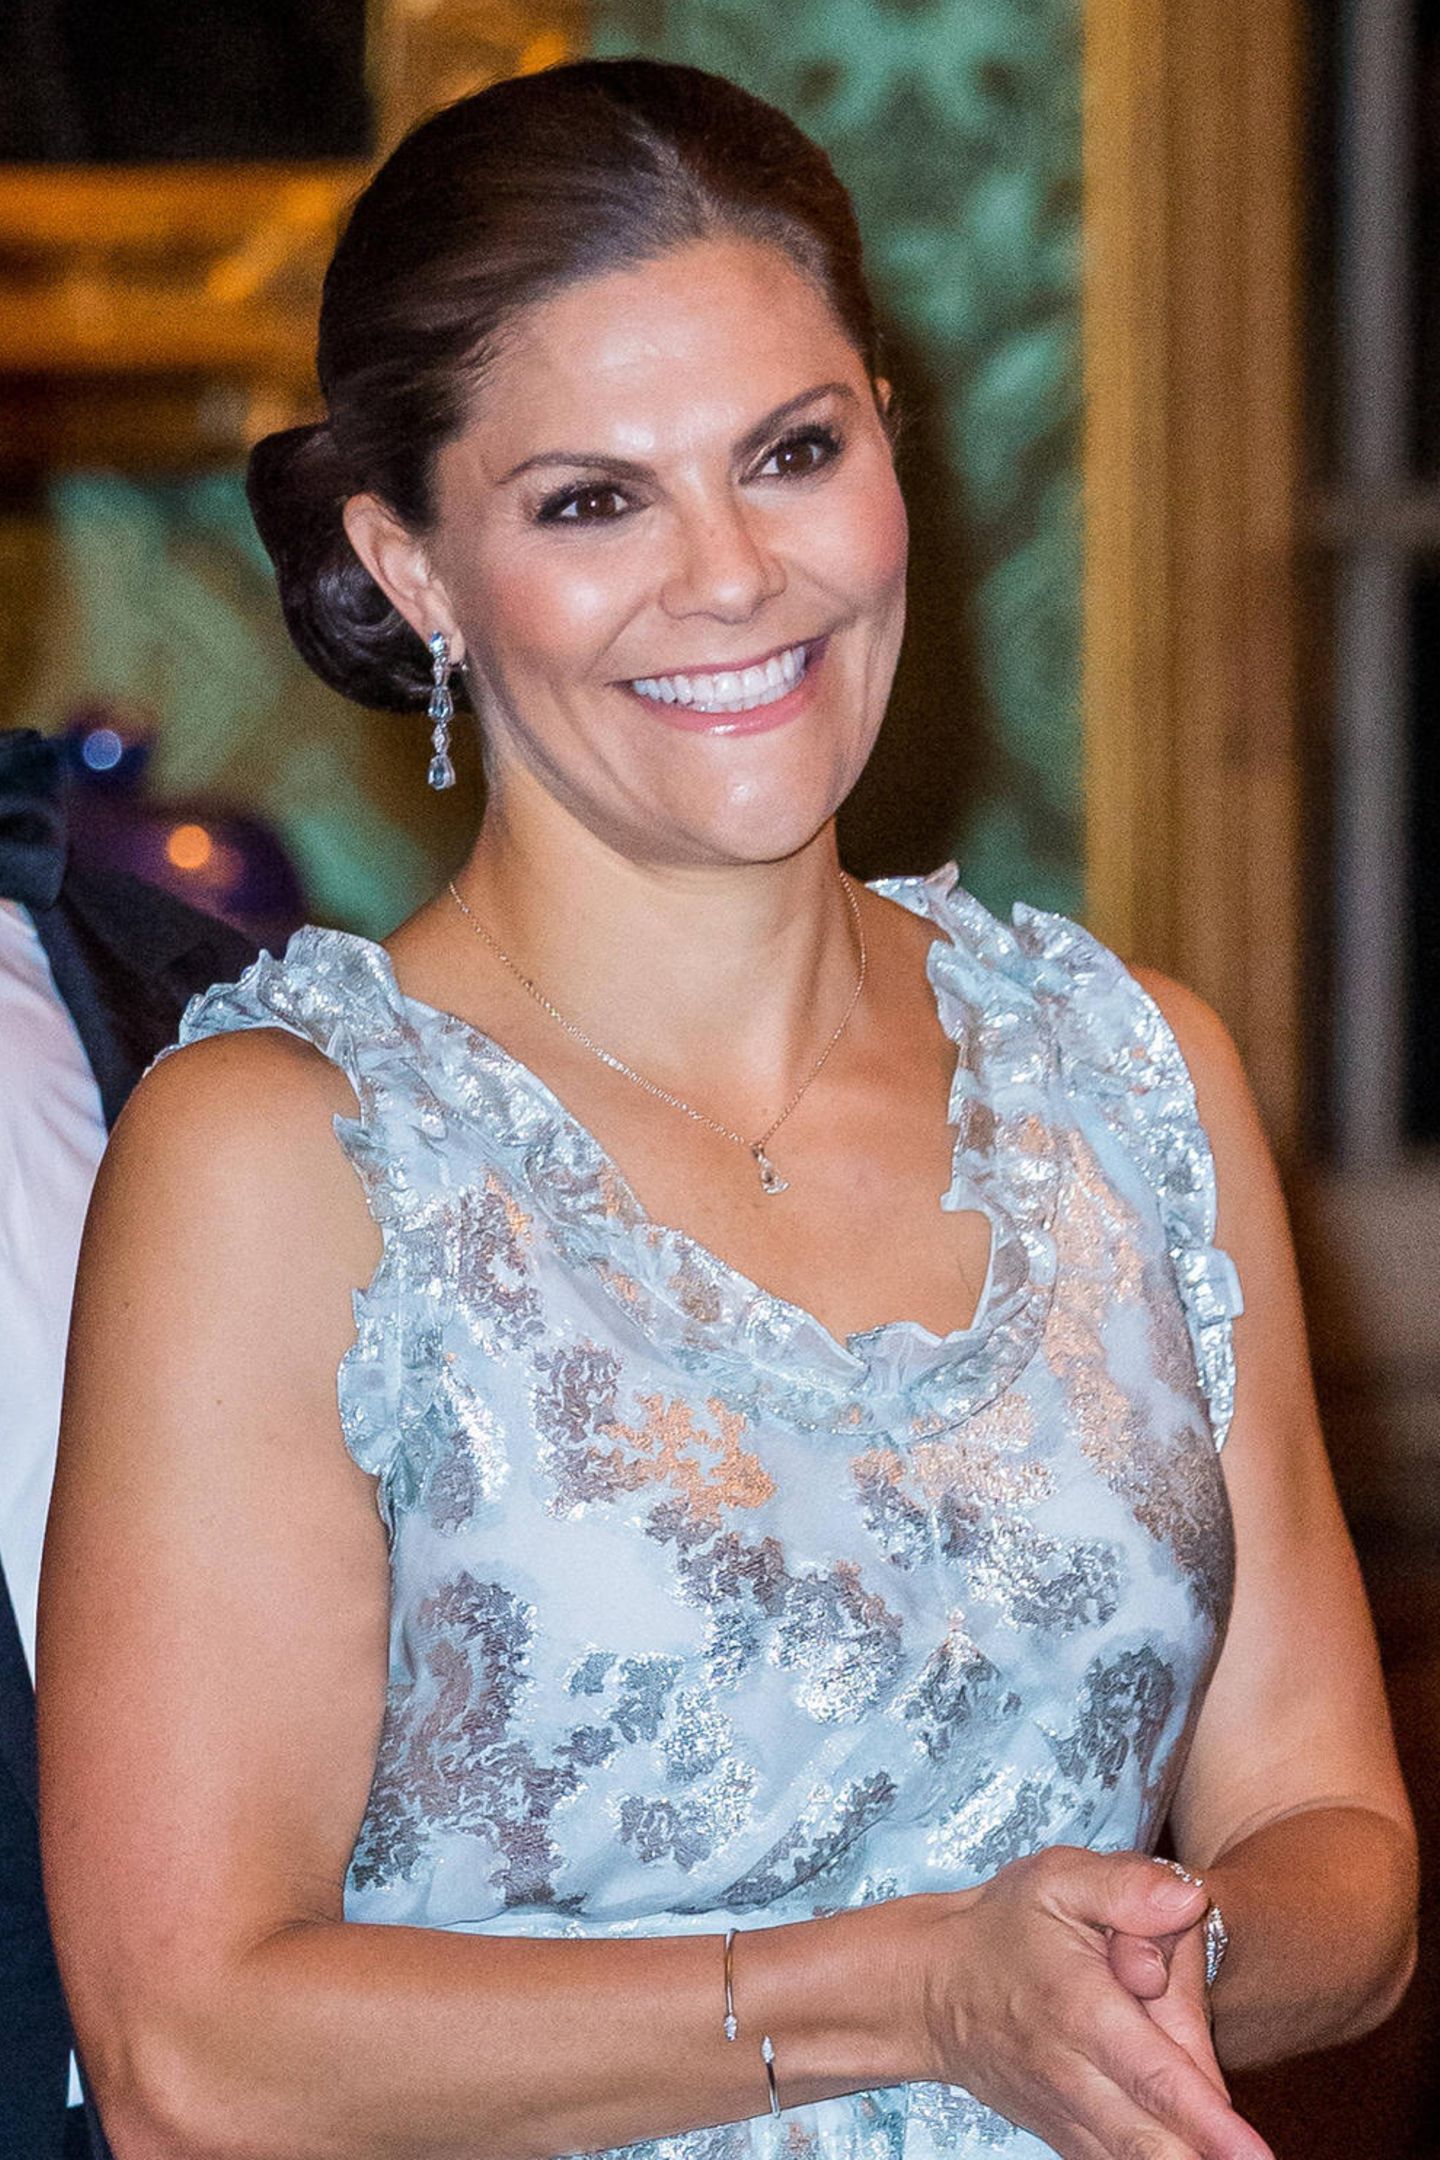 Prinzessin Victoria trägt zum alljährlichen "Sverigemiddag"-Dinner im Stockholmer Schloss ein bodenlanges, pastellblaues Kleid mit Jacquard-Muster. 